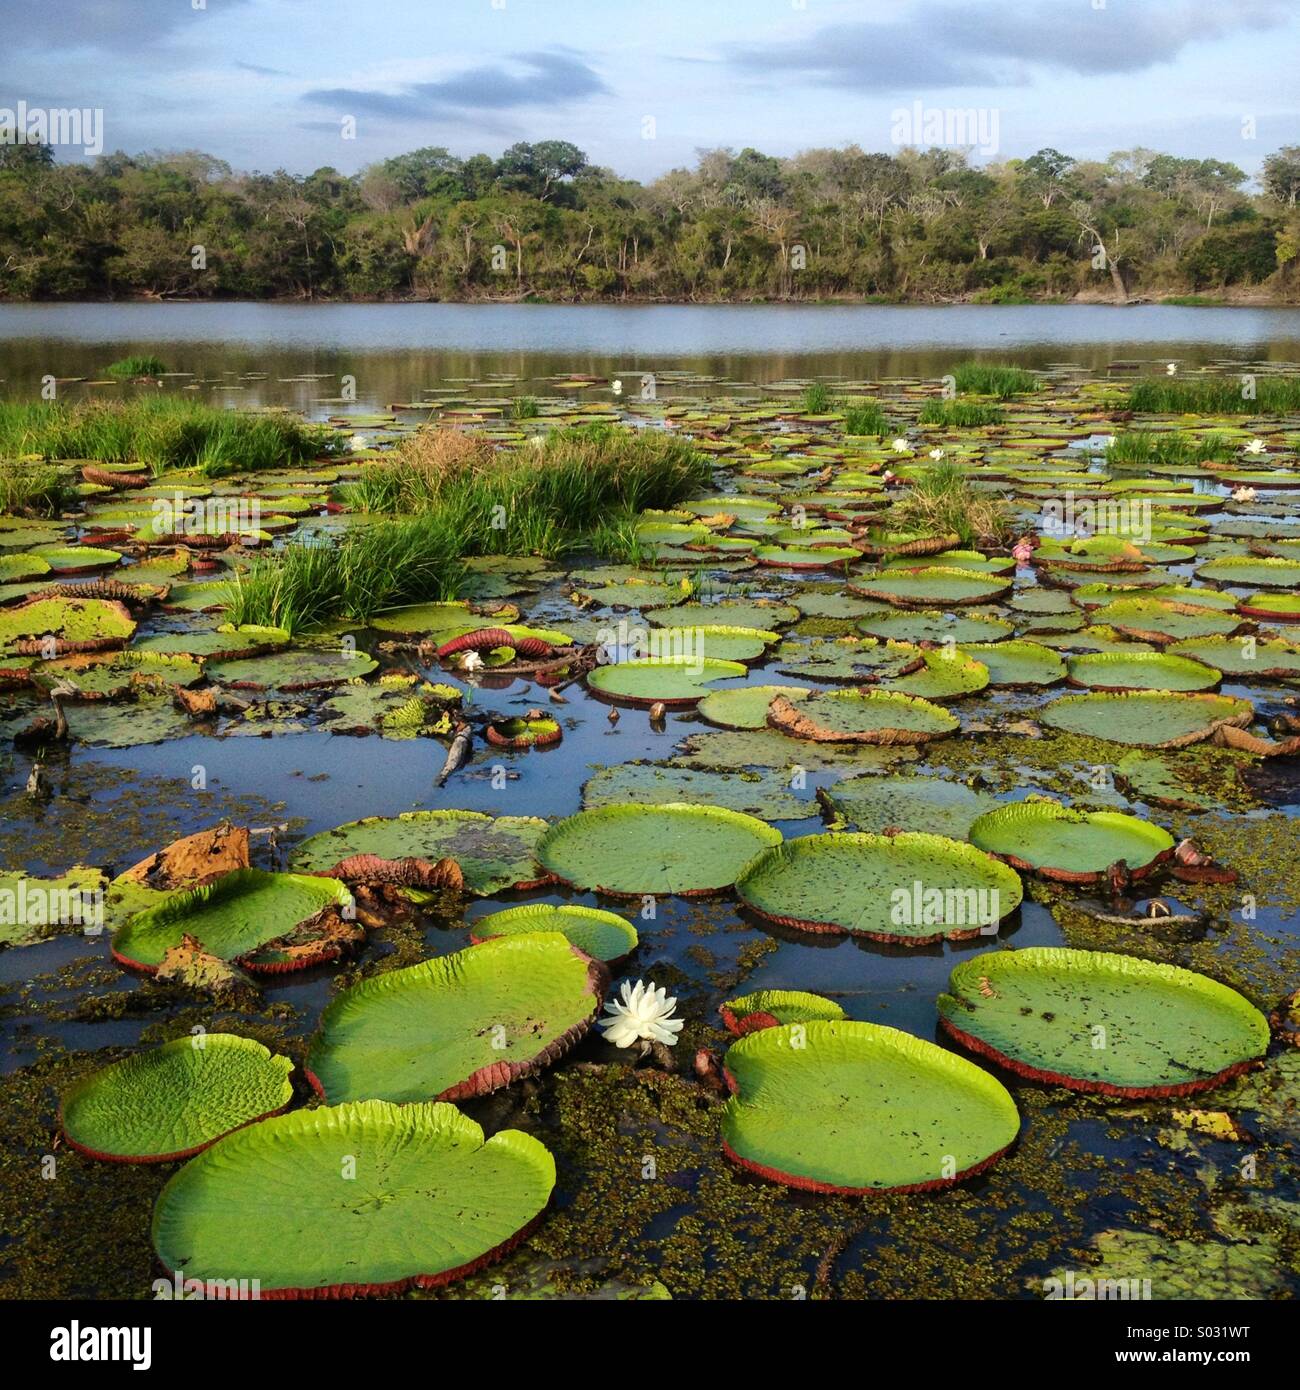 Amazon Seerosen, Oxbow See Fisch River, Guyana, Südamerika Stockfotografie  - Alamy